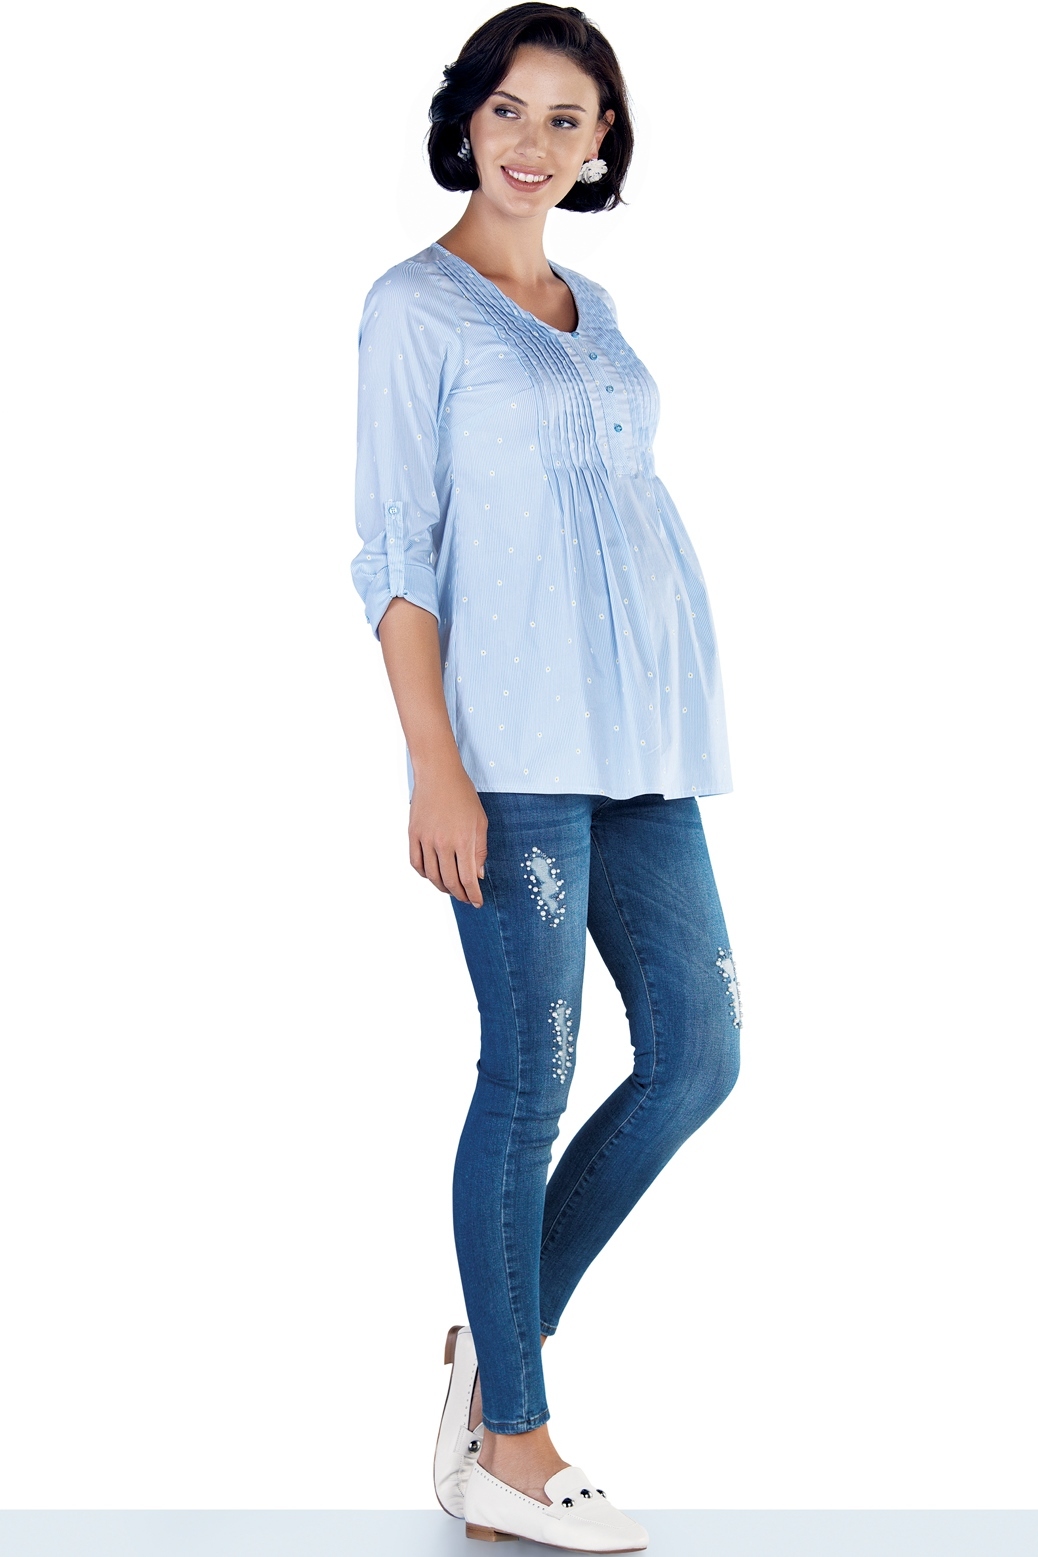 Фото укороченные джинсы-skinny для беременных EBRU, с эластичной вставкой от магазина СкороМама, синий, весна-лето, размеры.